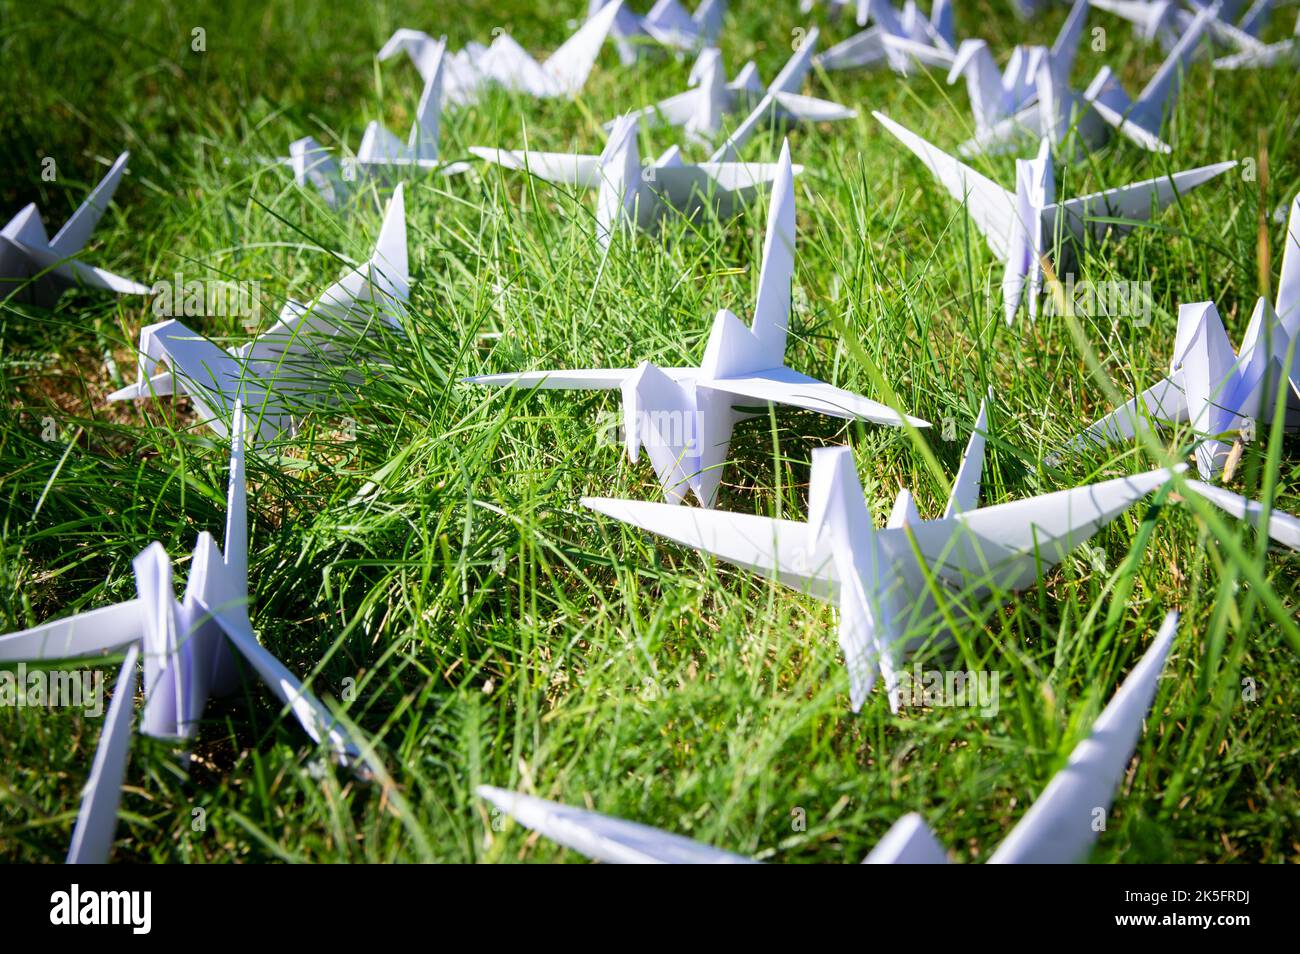 Gru Origami ripiegate giapponesi su erba fresca. Centinaia di uccelli di carta fatti a mano sul campo verde con spazio di copia. 1000 tema scultura tsuru gru. Simbolo di pace, fede, salute, desideri e speranza Foto Stock